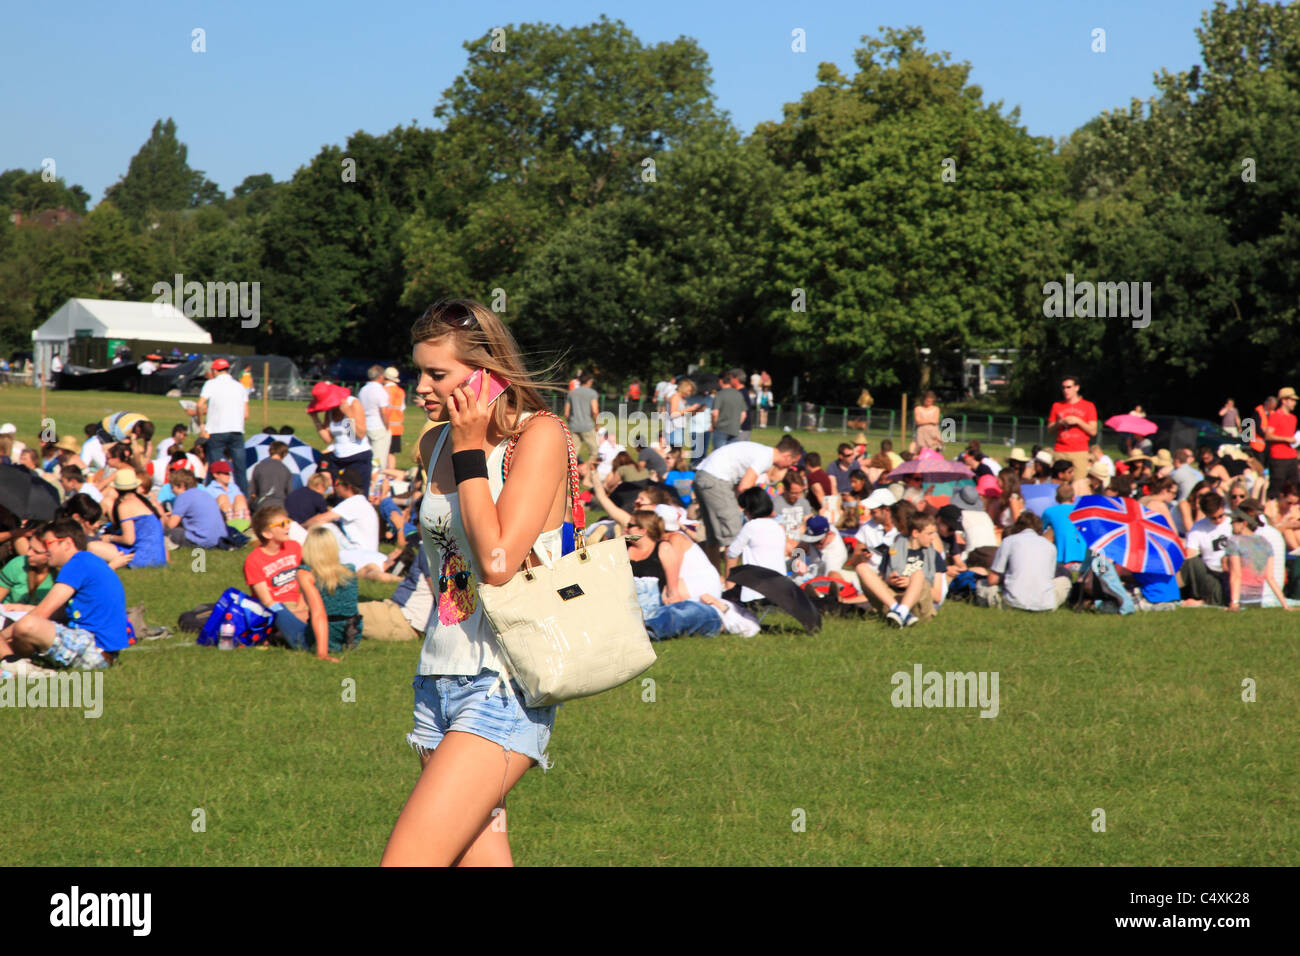 Personas haciendo cola para entrar al torneo de Tenis de Wimbledon, Surrey, Inglaterra Foto de stock